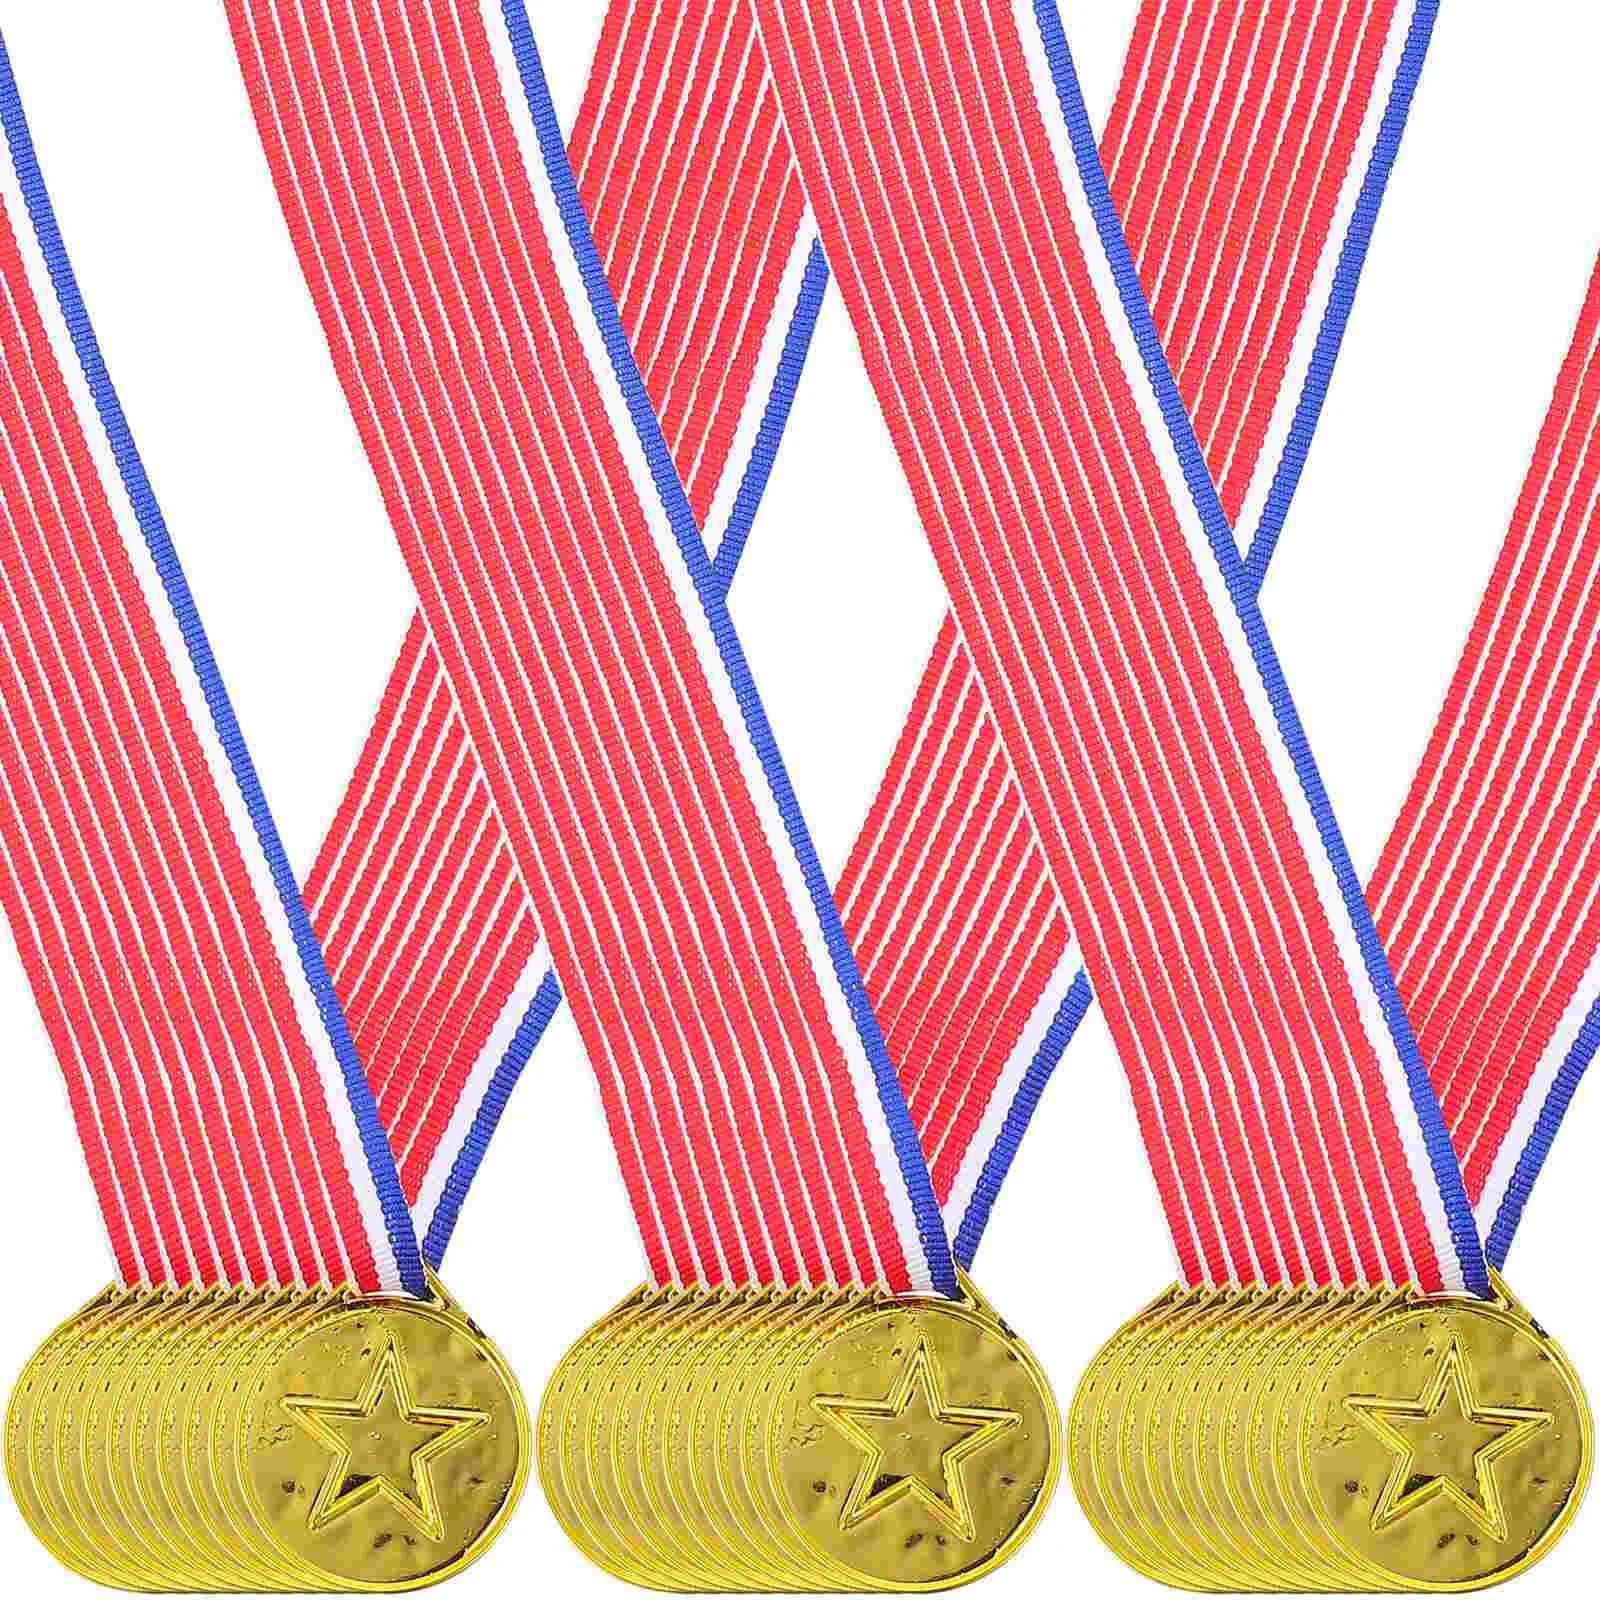 30 Pcs Soccer Medal Sports Award Medals Running Medals Sports Soccer Games Custom Medals Plastic Gold Medals